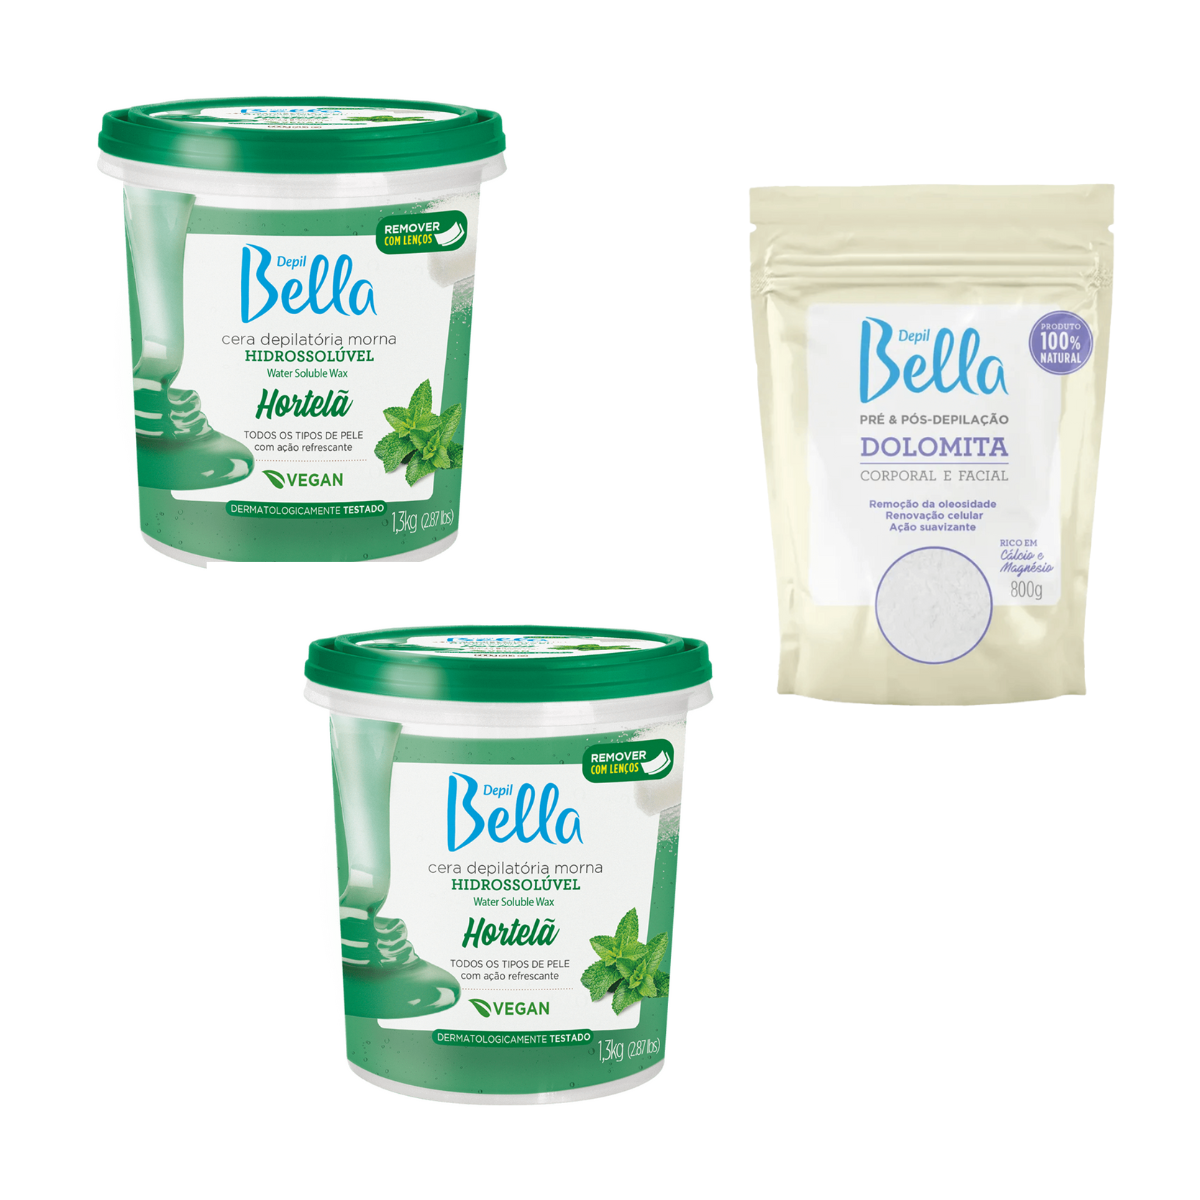 Depil Bella Pack 2 Cera de Azúcar Cuerpo Completo Depilación Menta, y 1 Dolomita en Polvo, 100% natural, vegana, para todo tipo de piel. - compañía depilatoria